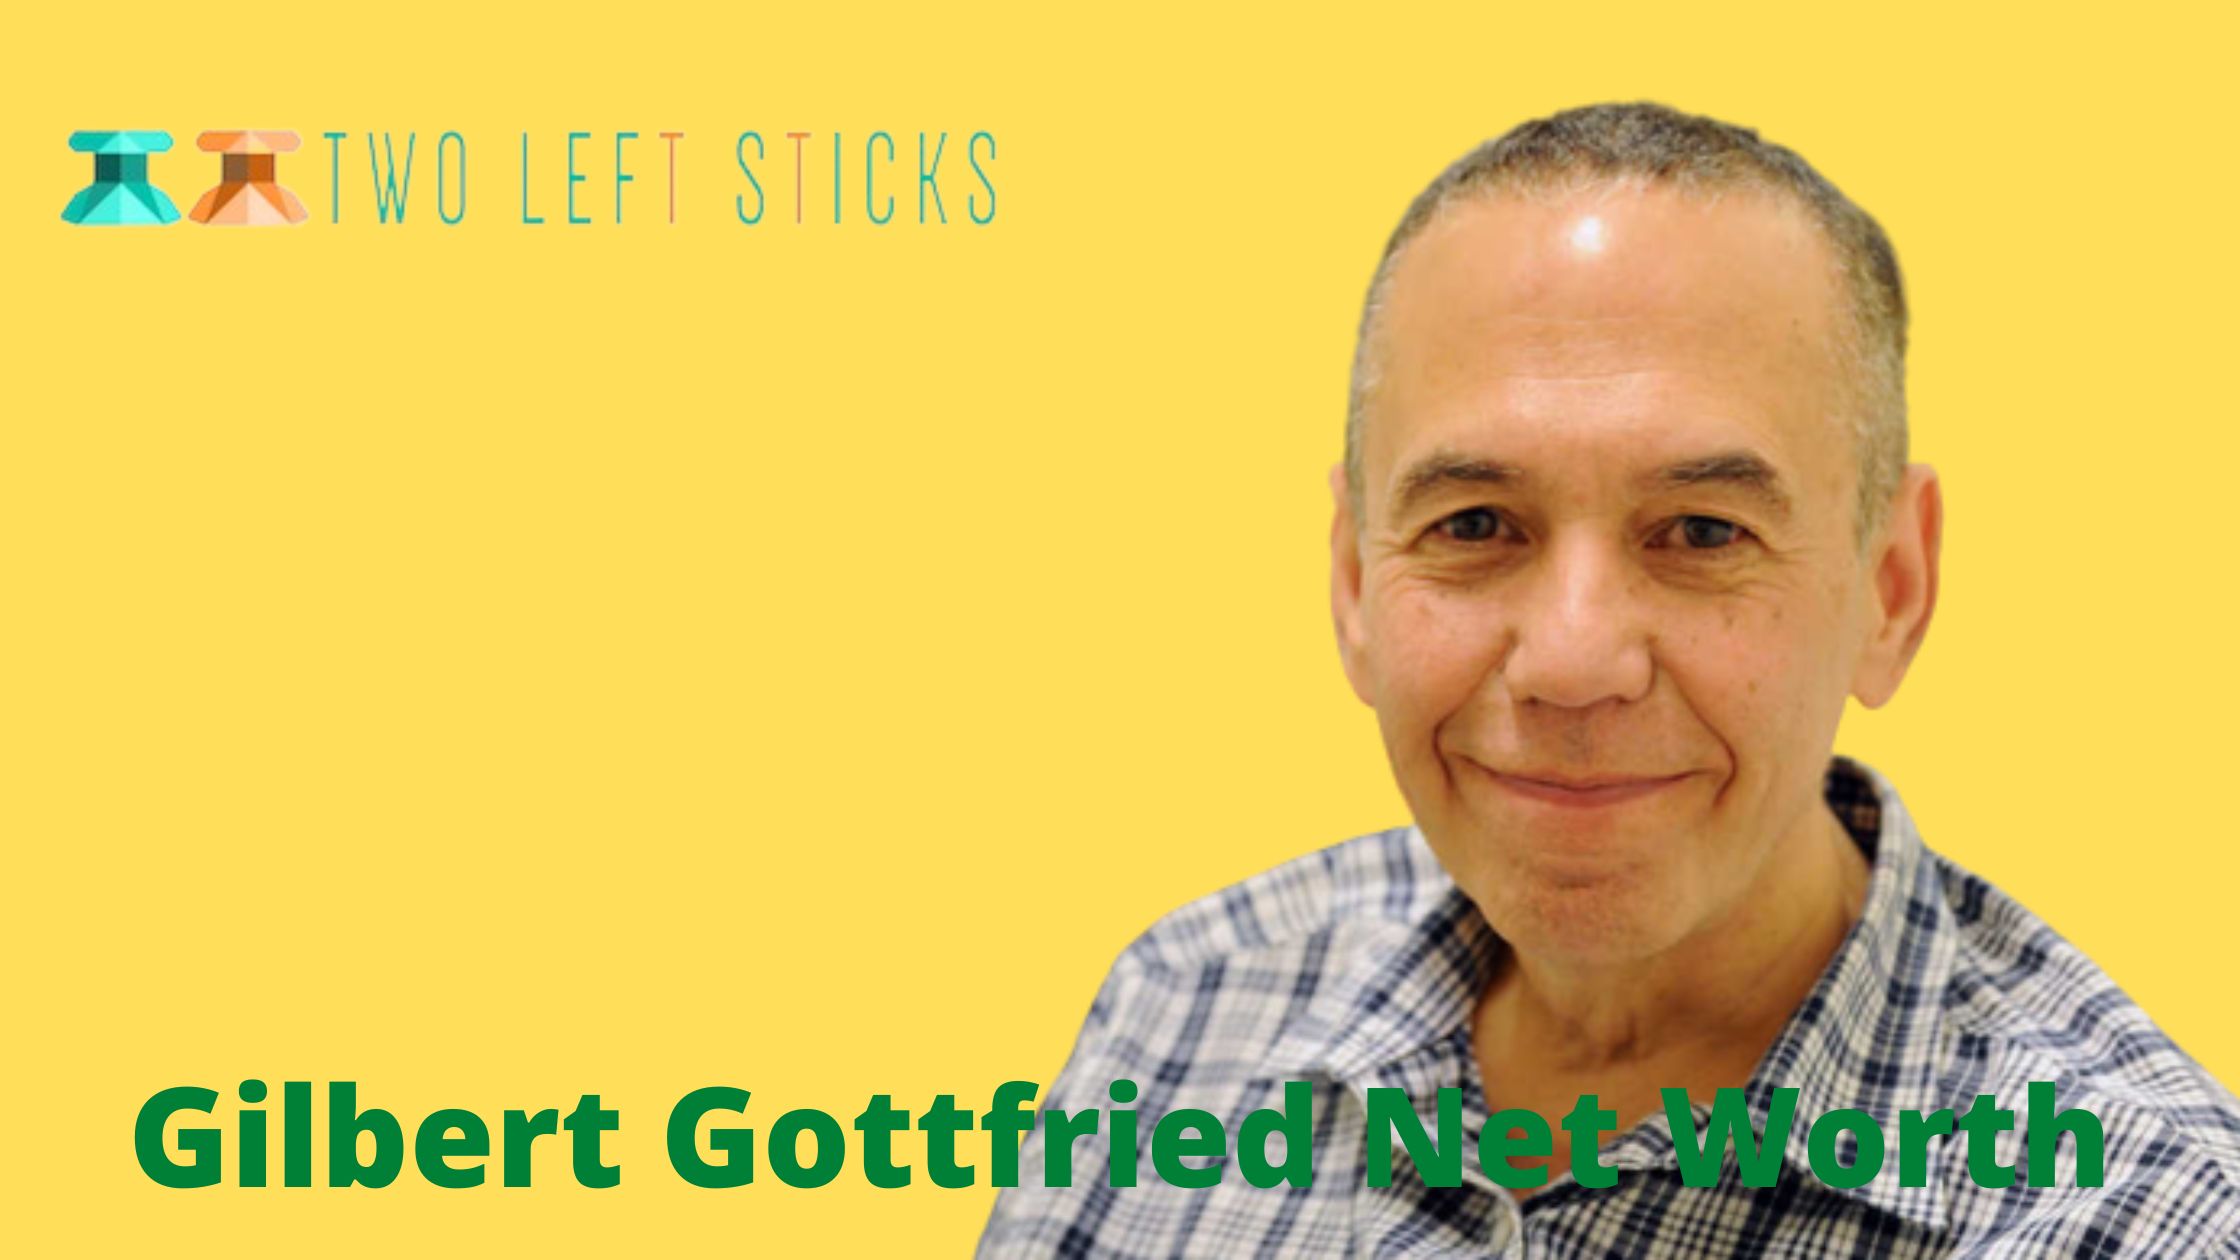 Gilbert-Gottfried-Net-Worth-twoleftsticks(1)